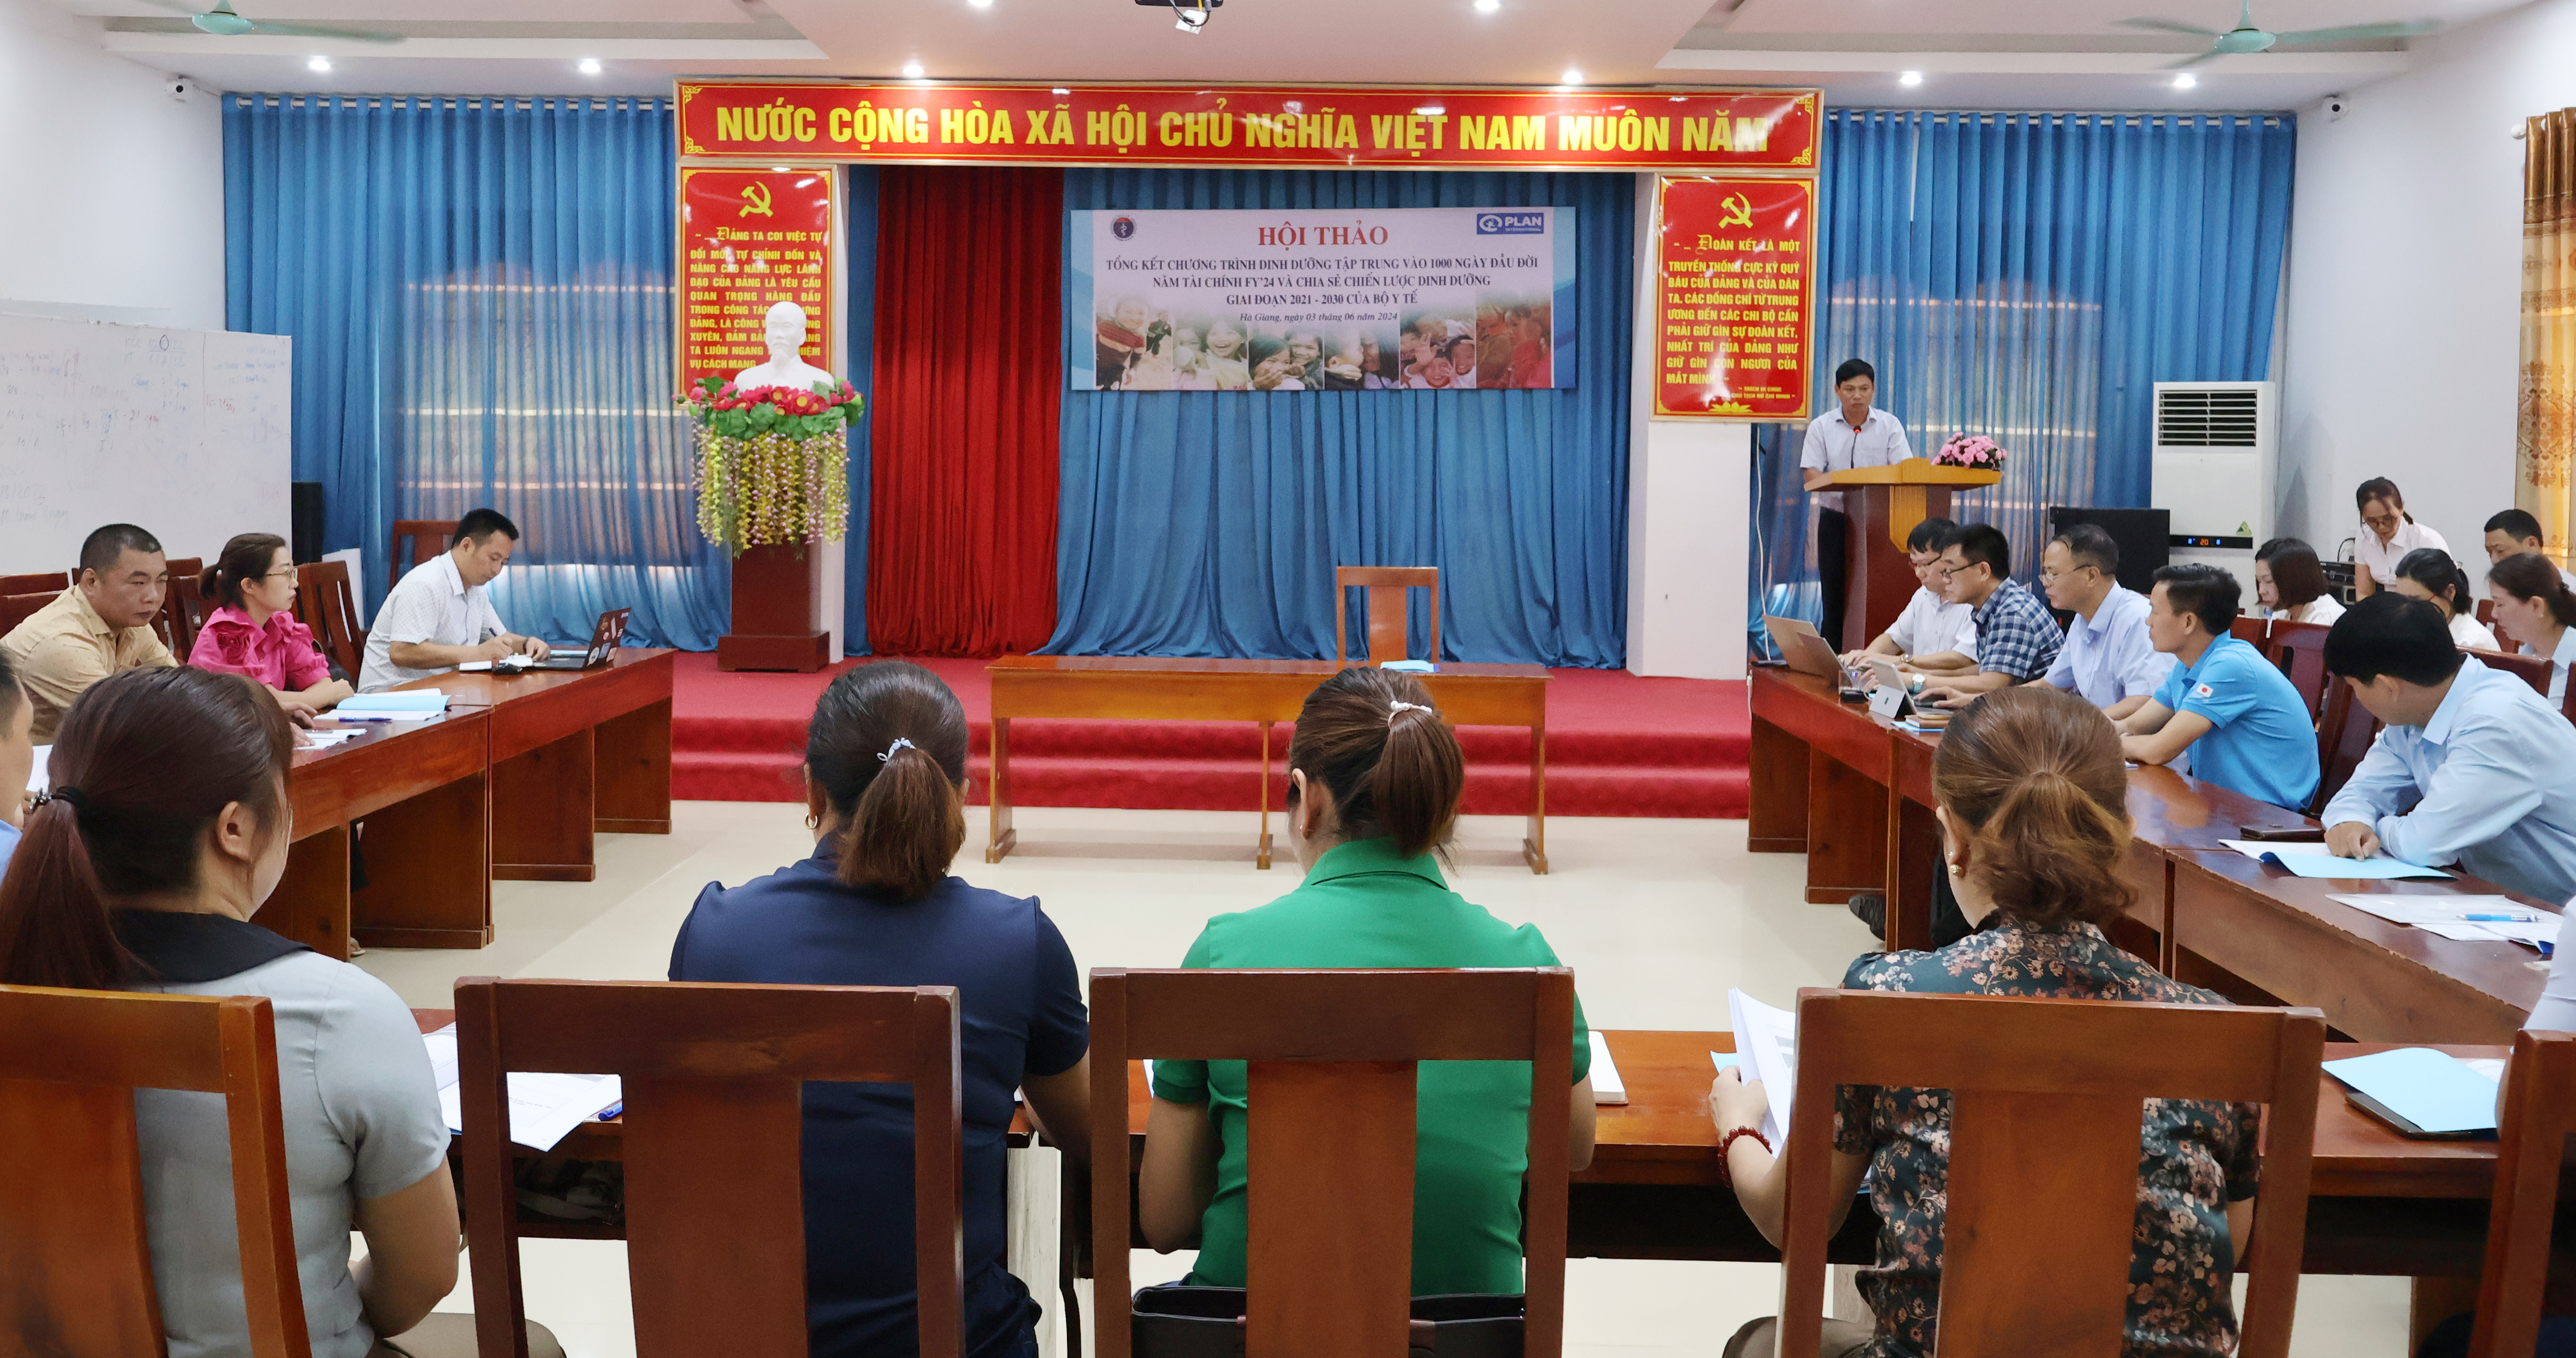 Đồng chí Vũ Hùng Vương, Phó Giám đốc Sở Y tế, Trưởng Ban Quản lý dự án Plan Sở Y tế, phát biểu khai mạc tại Hội thảo